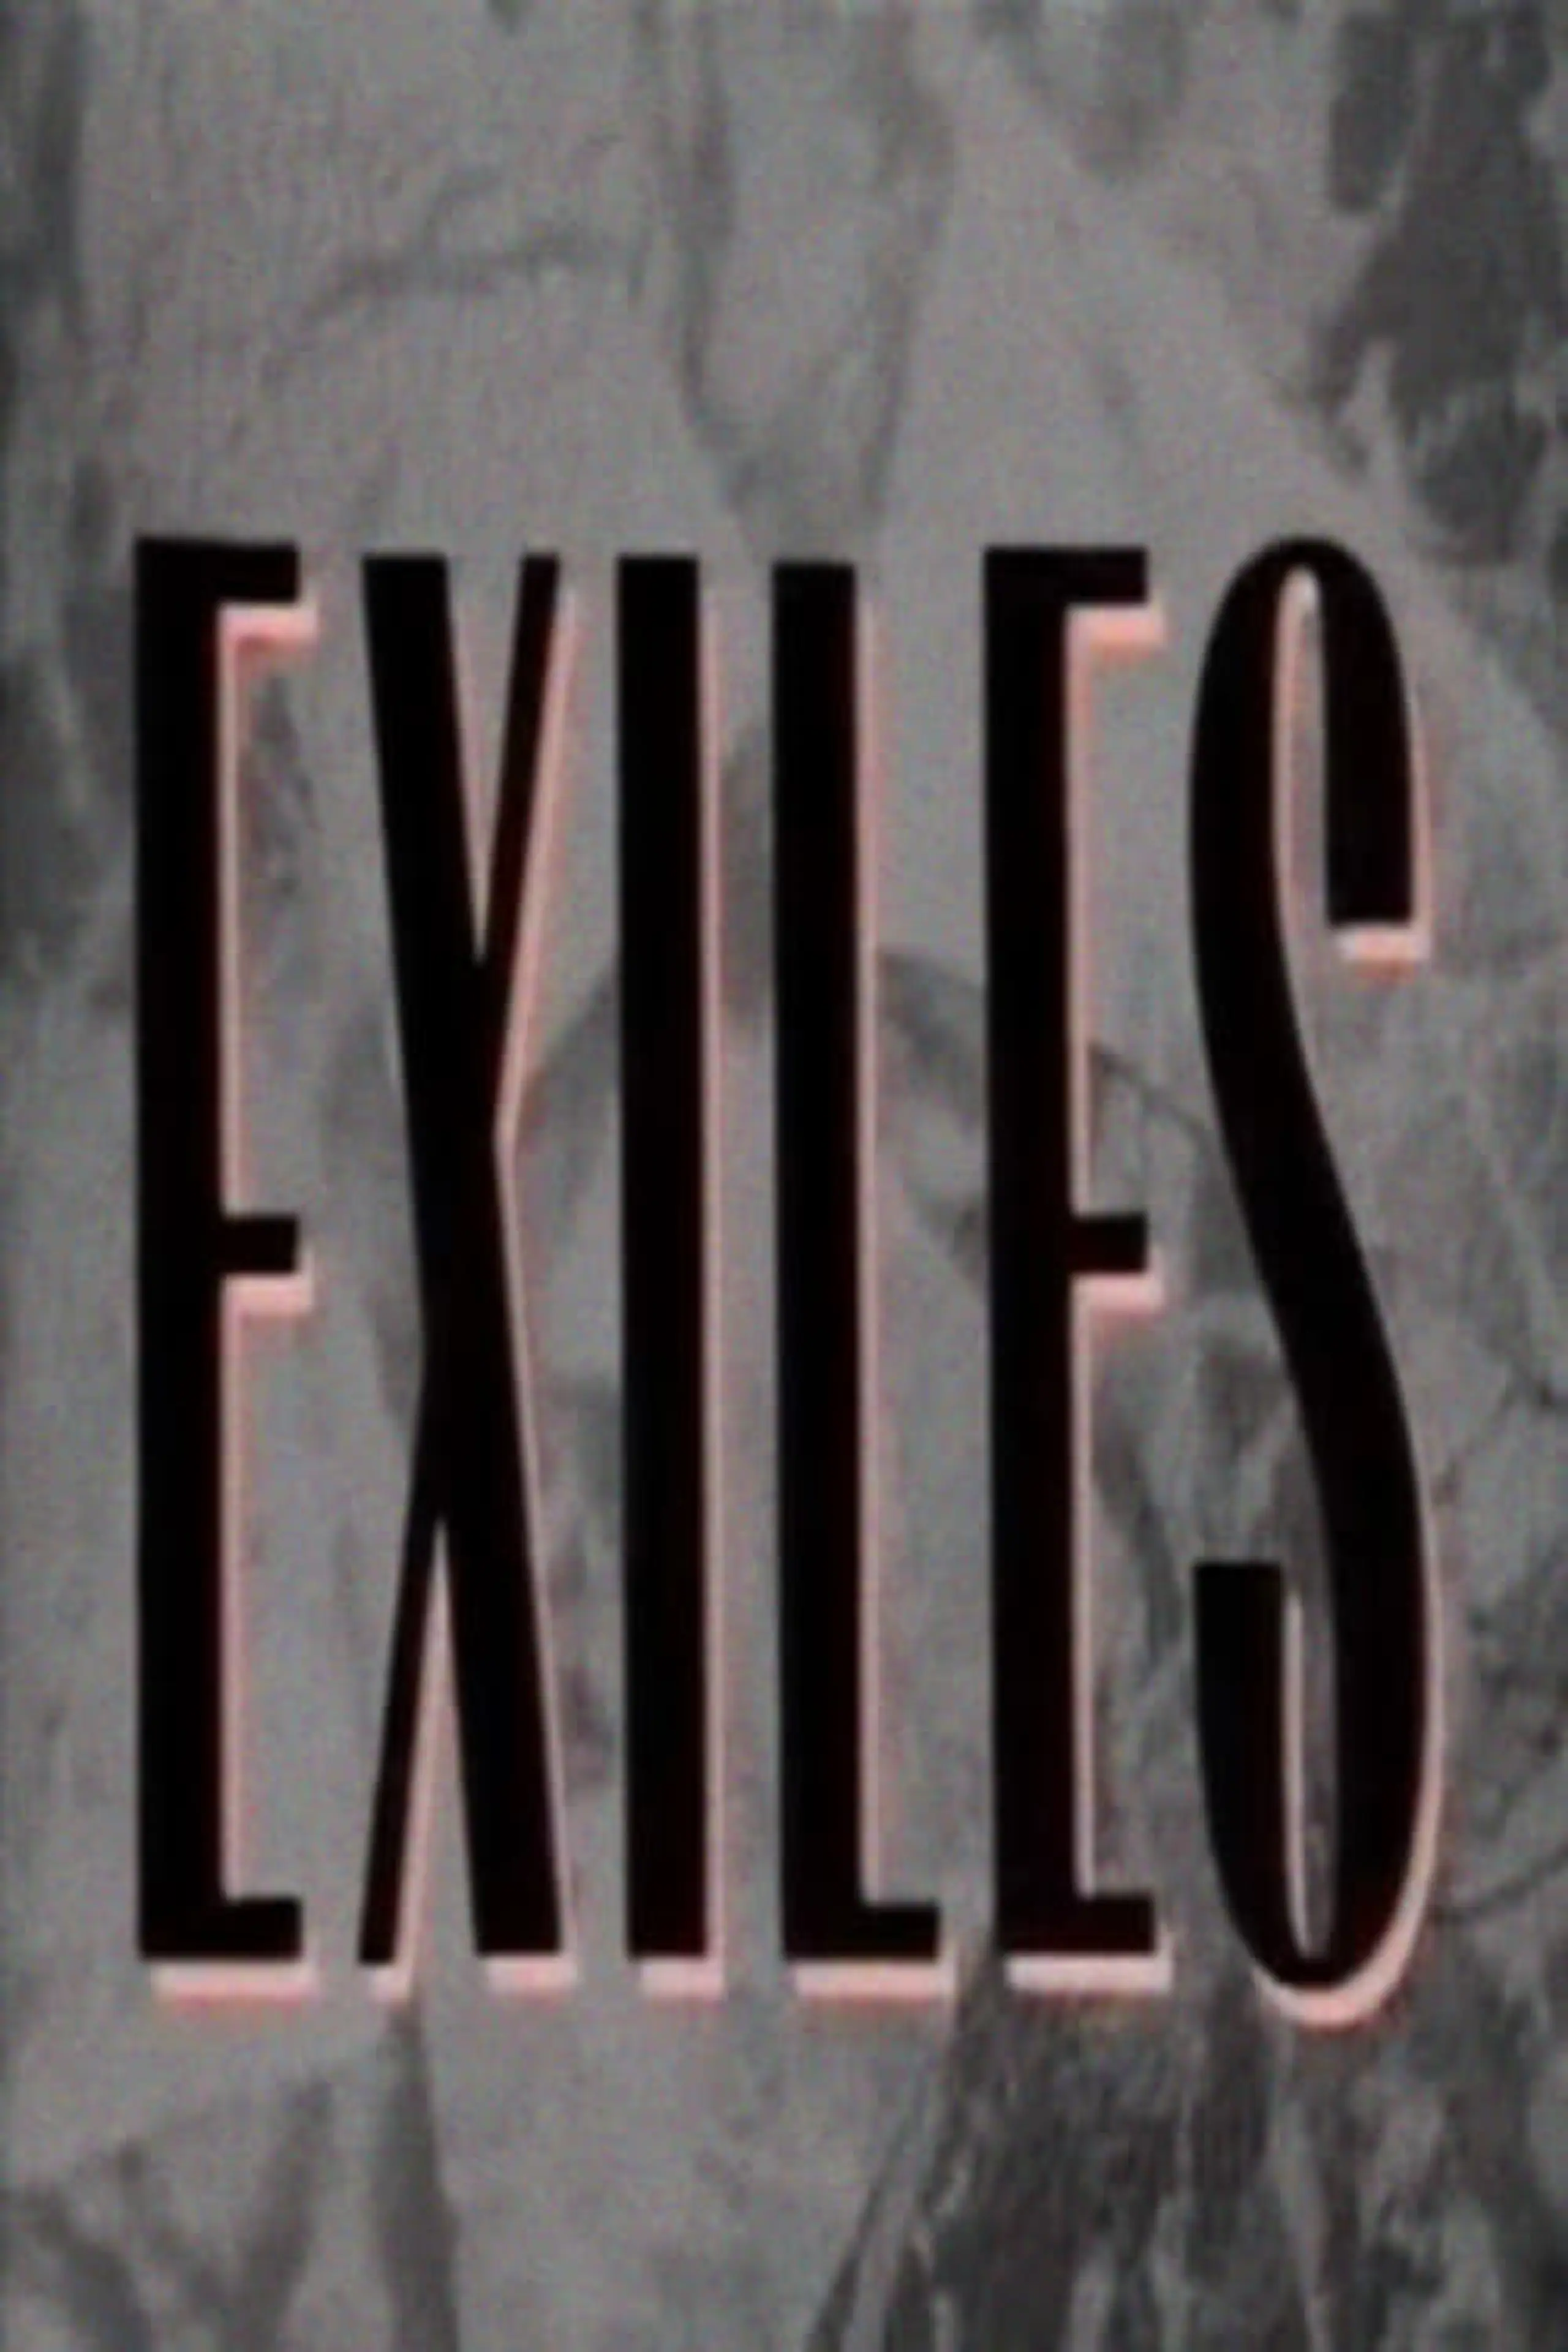 Exiles: Edward Said